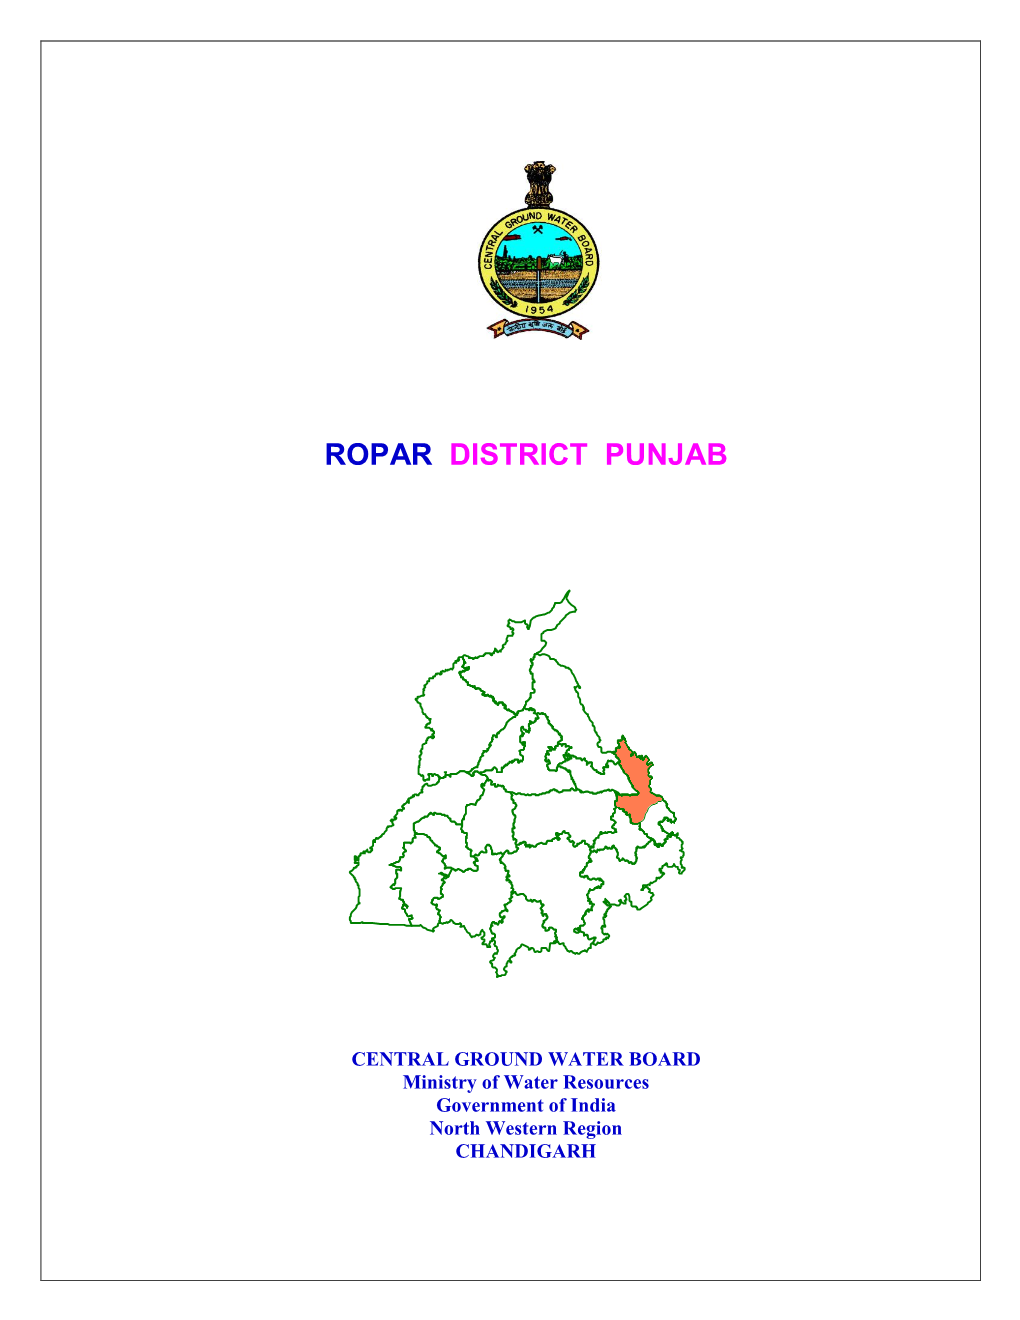 Ropar District Punjab